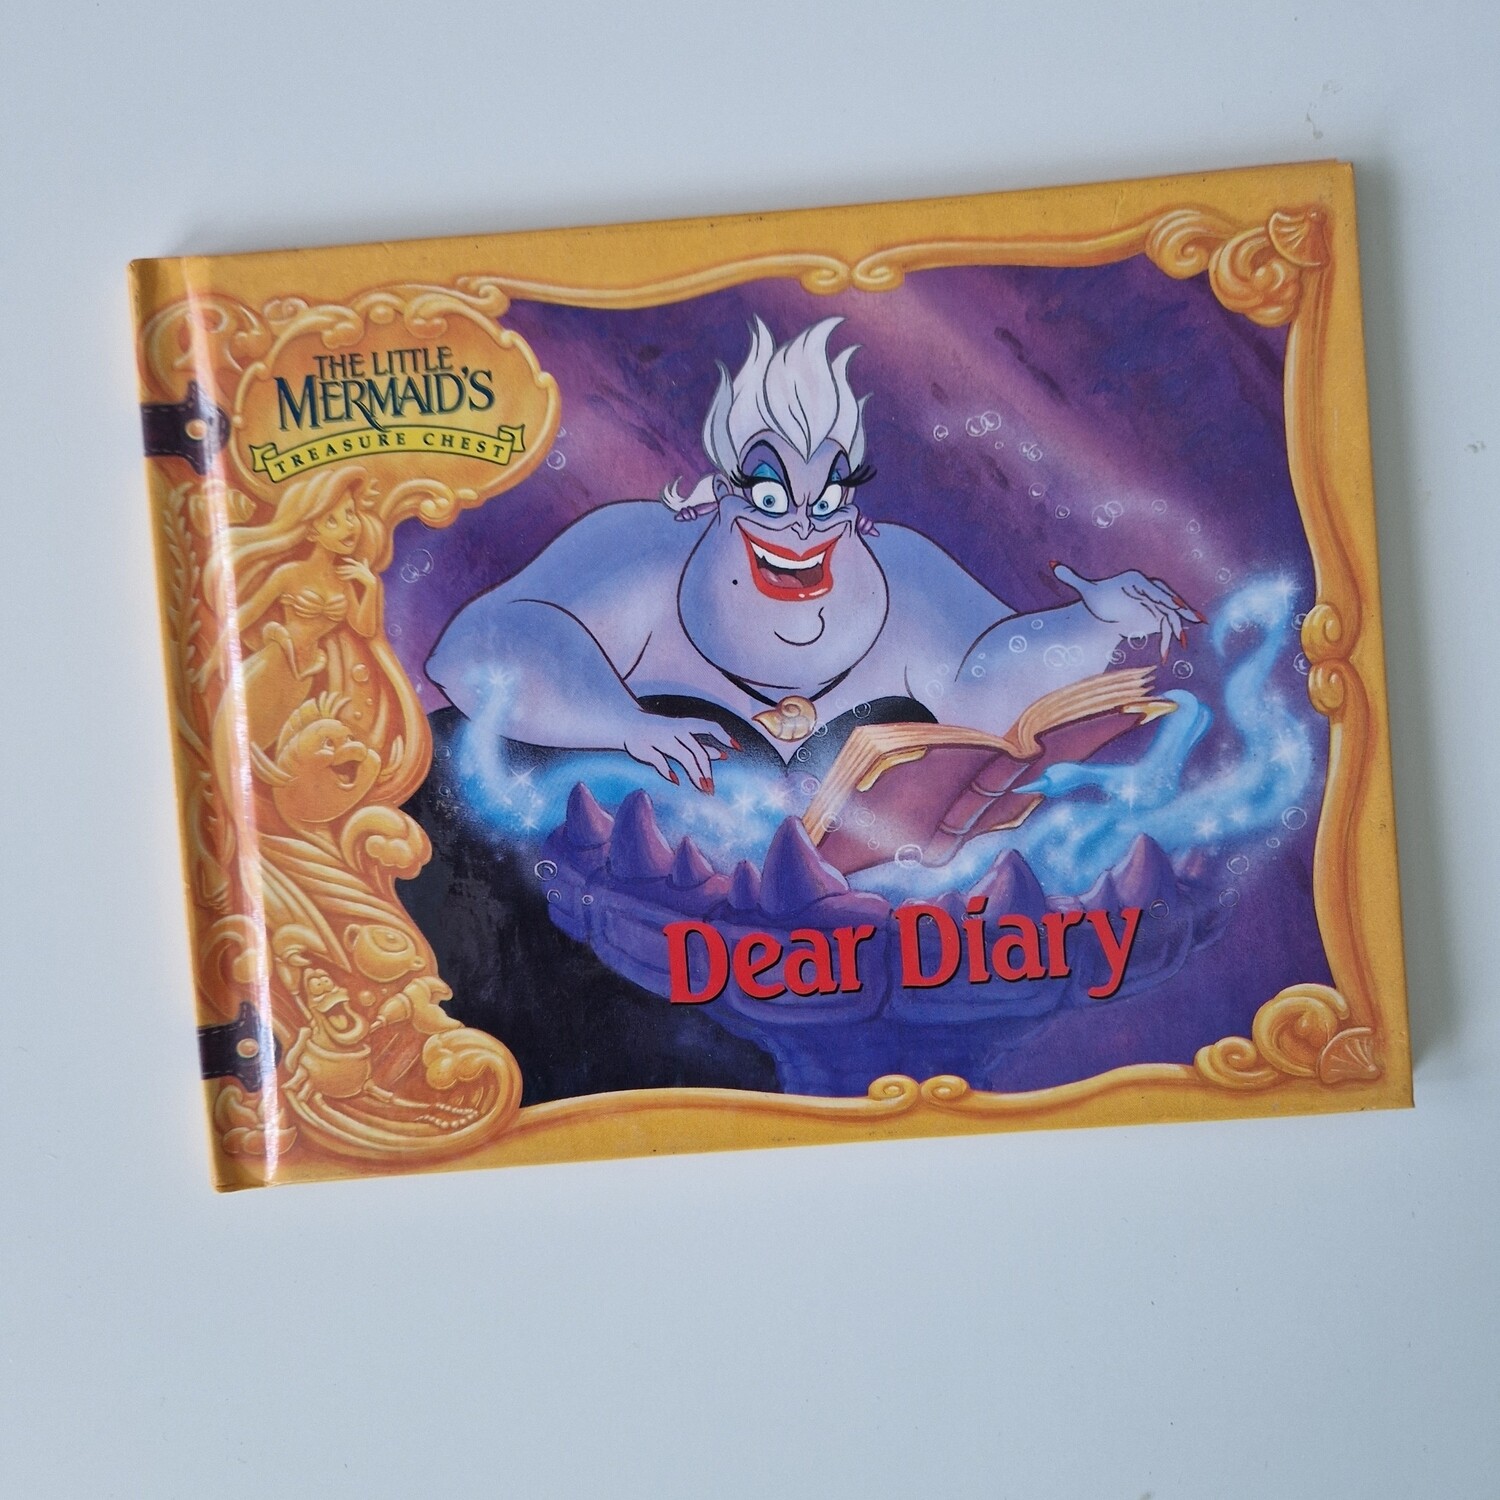 The Little Mermaid - Ursula - Dear Diary